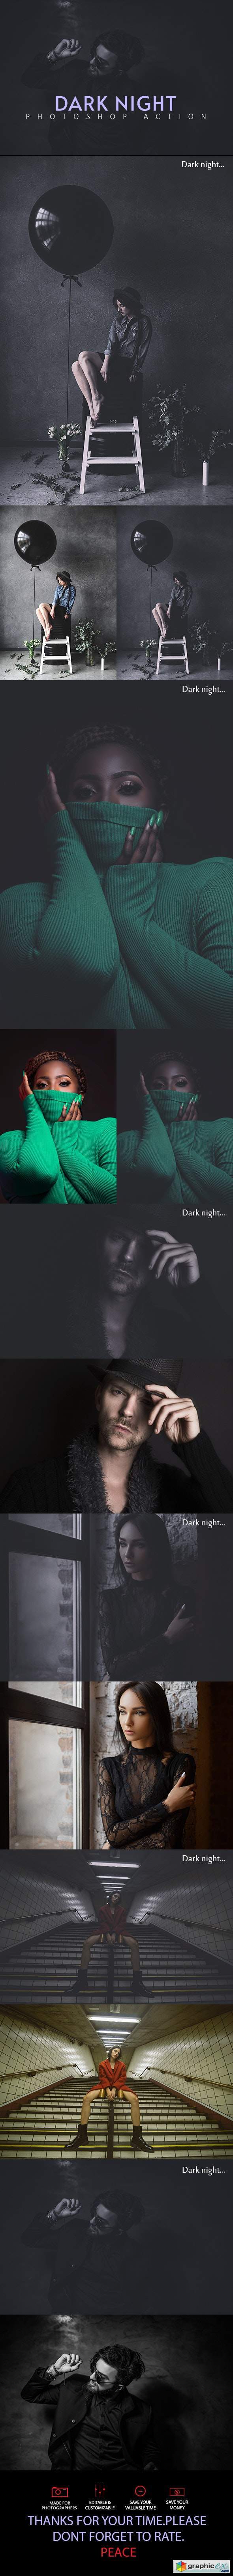 Dark Night Photoshop Action 25606778